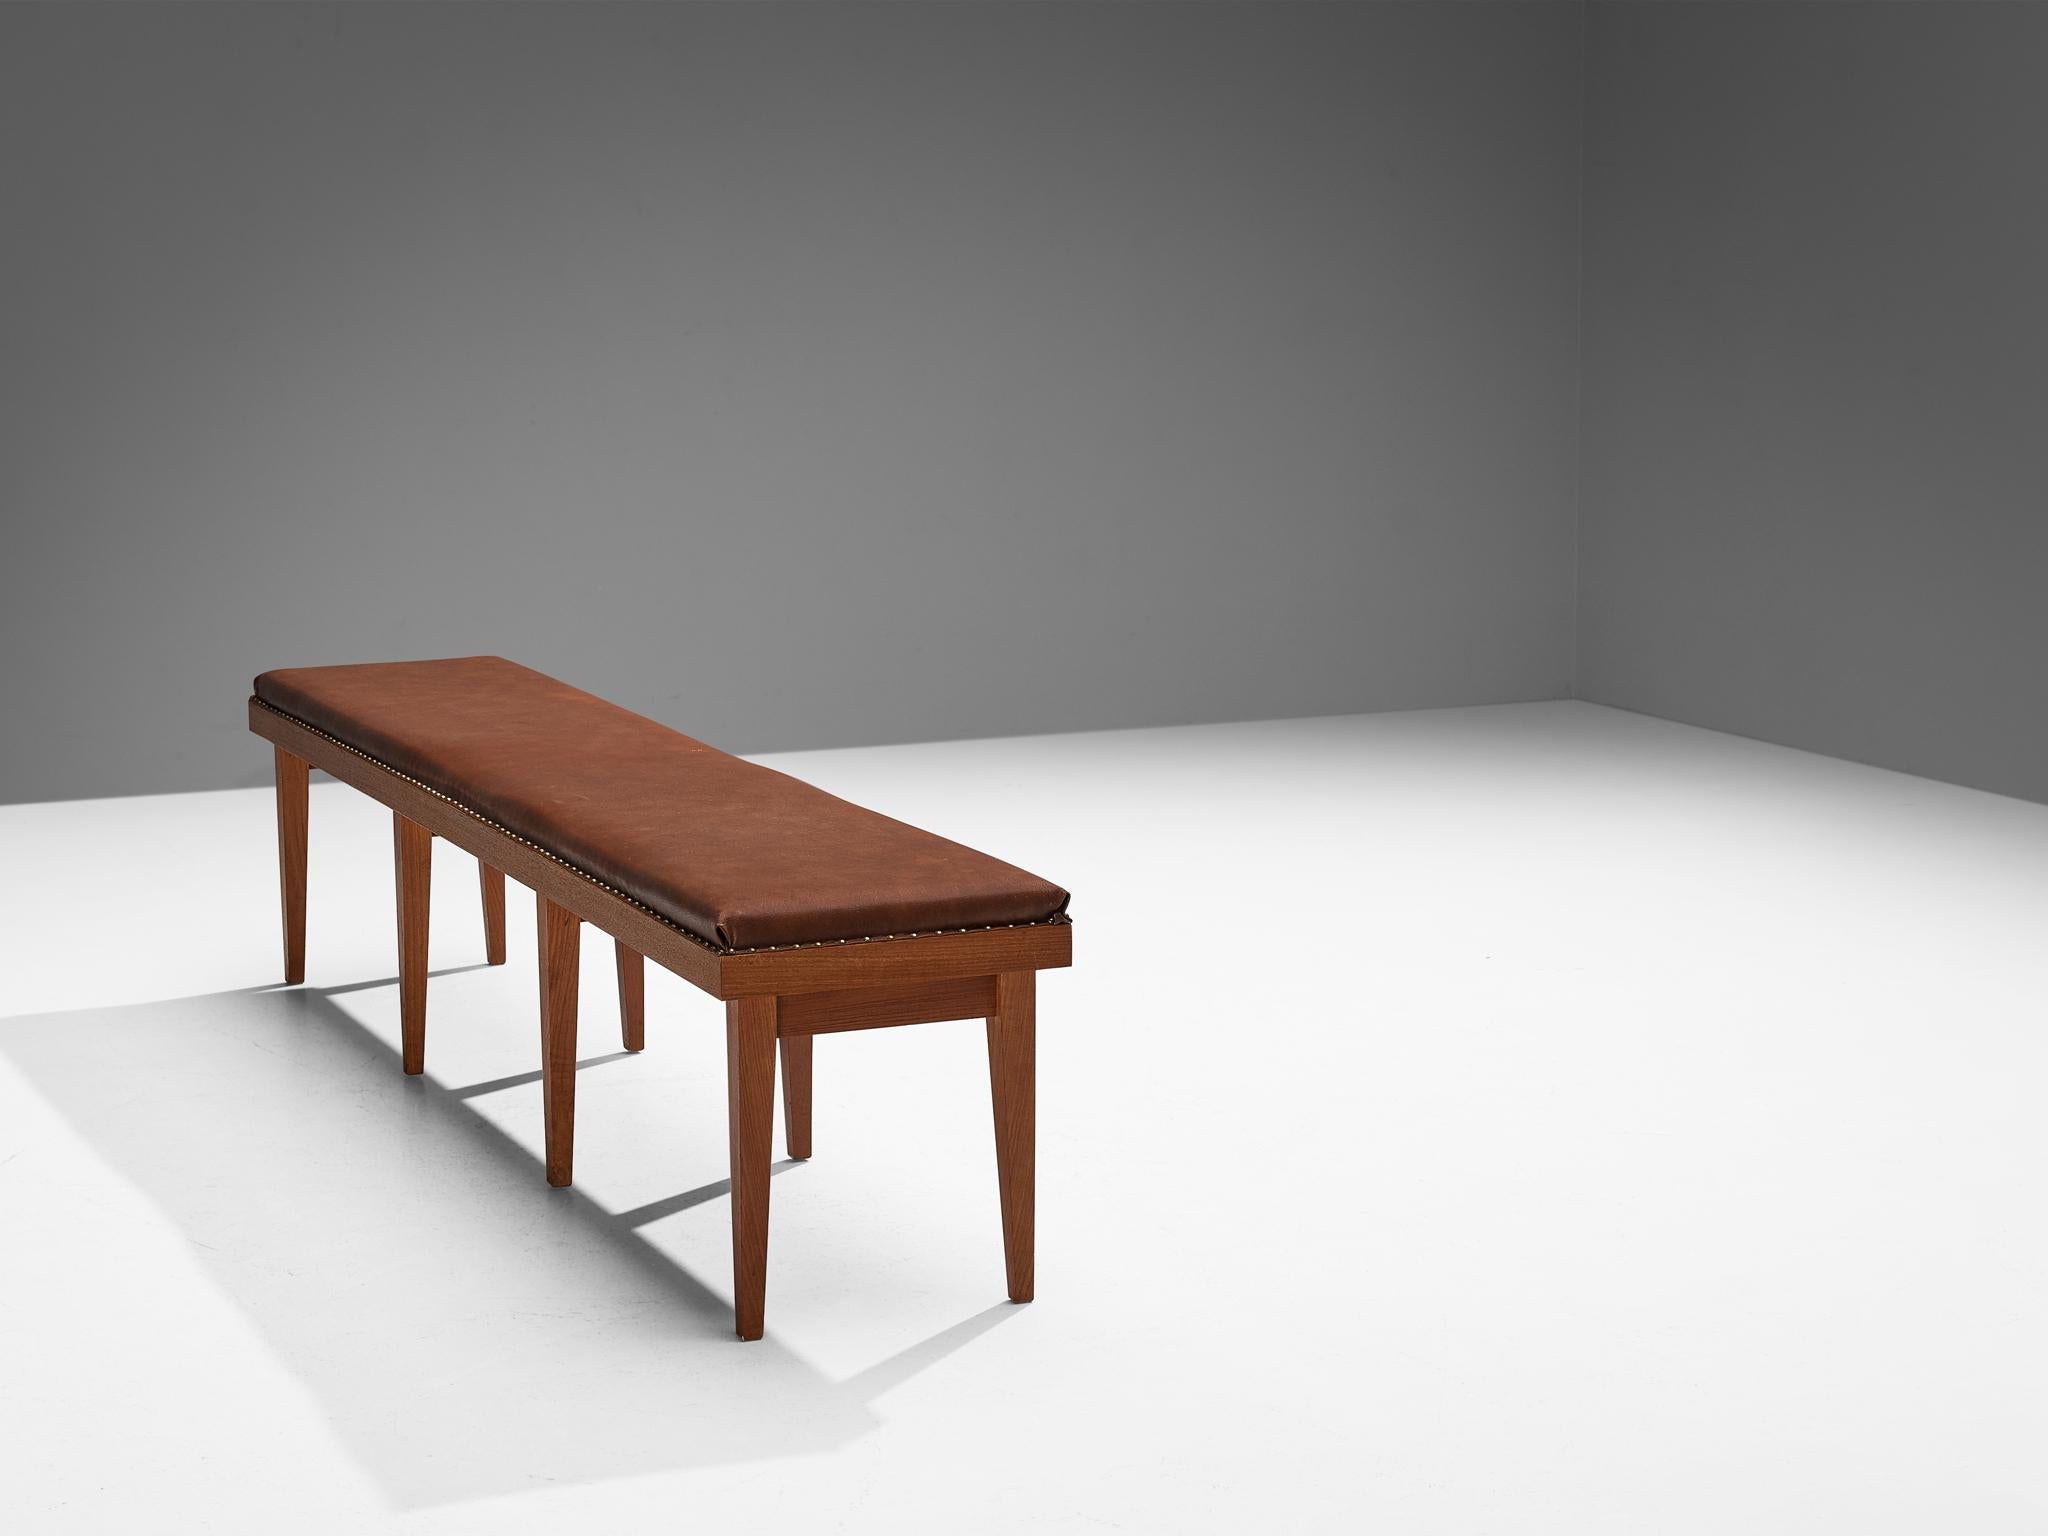 Scandinavian Modern Bench in Chestnut Upholstery and Teak